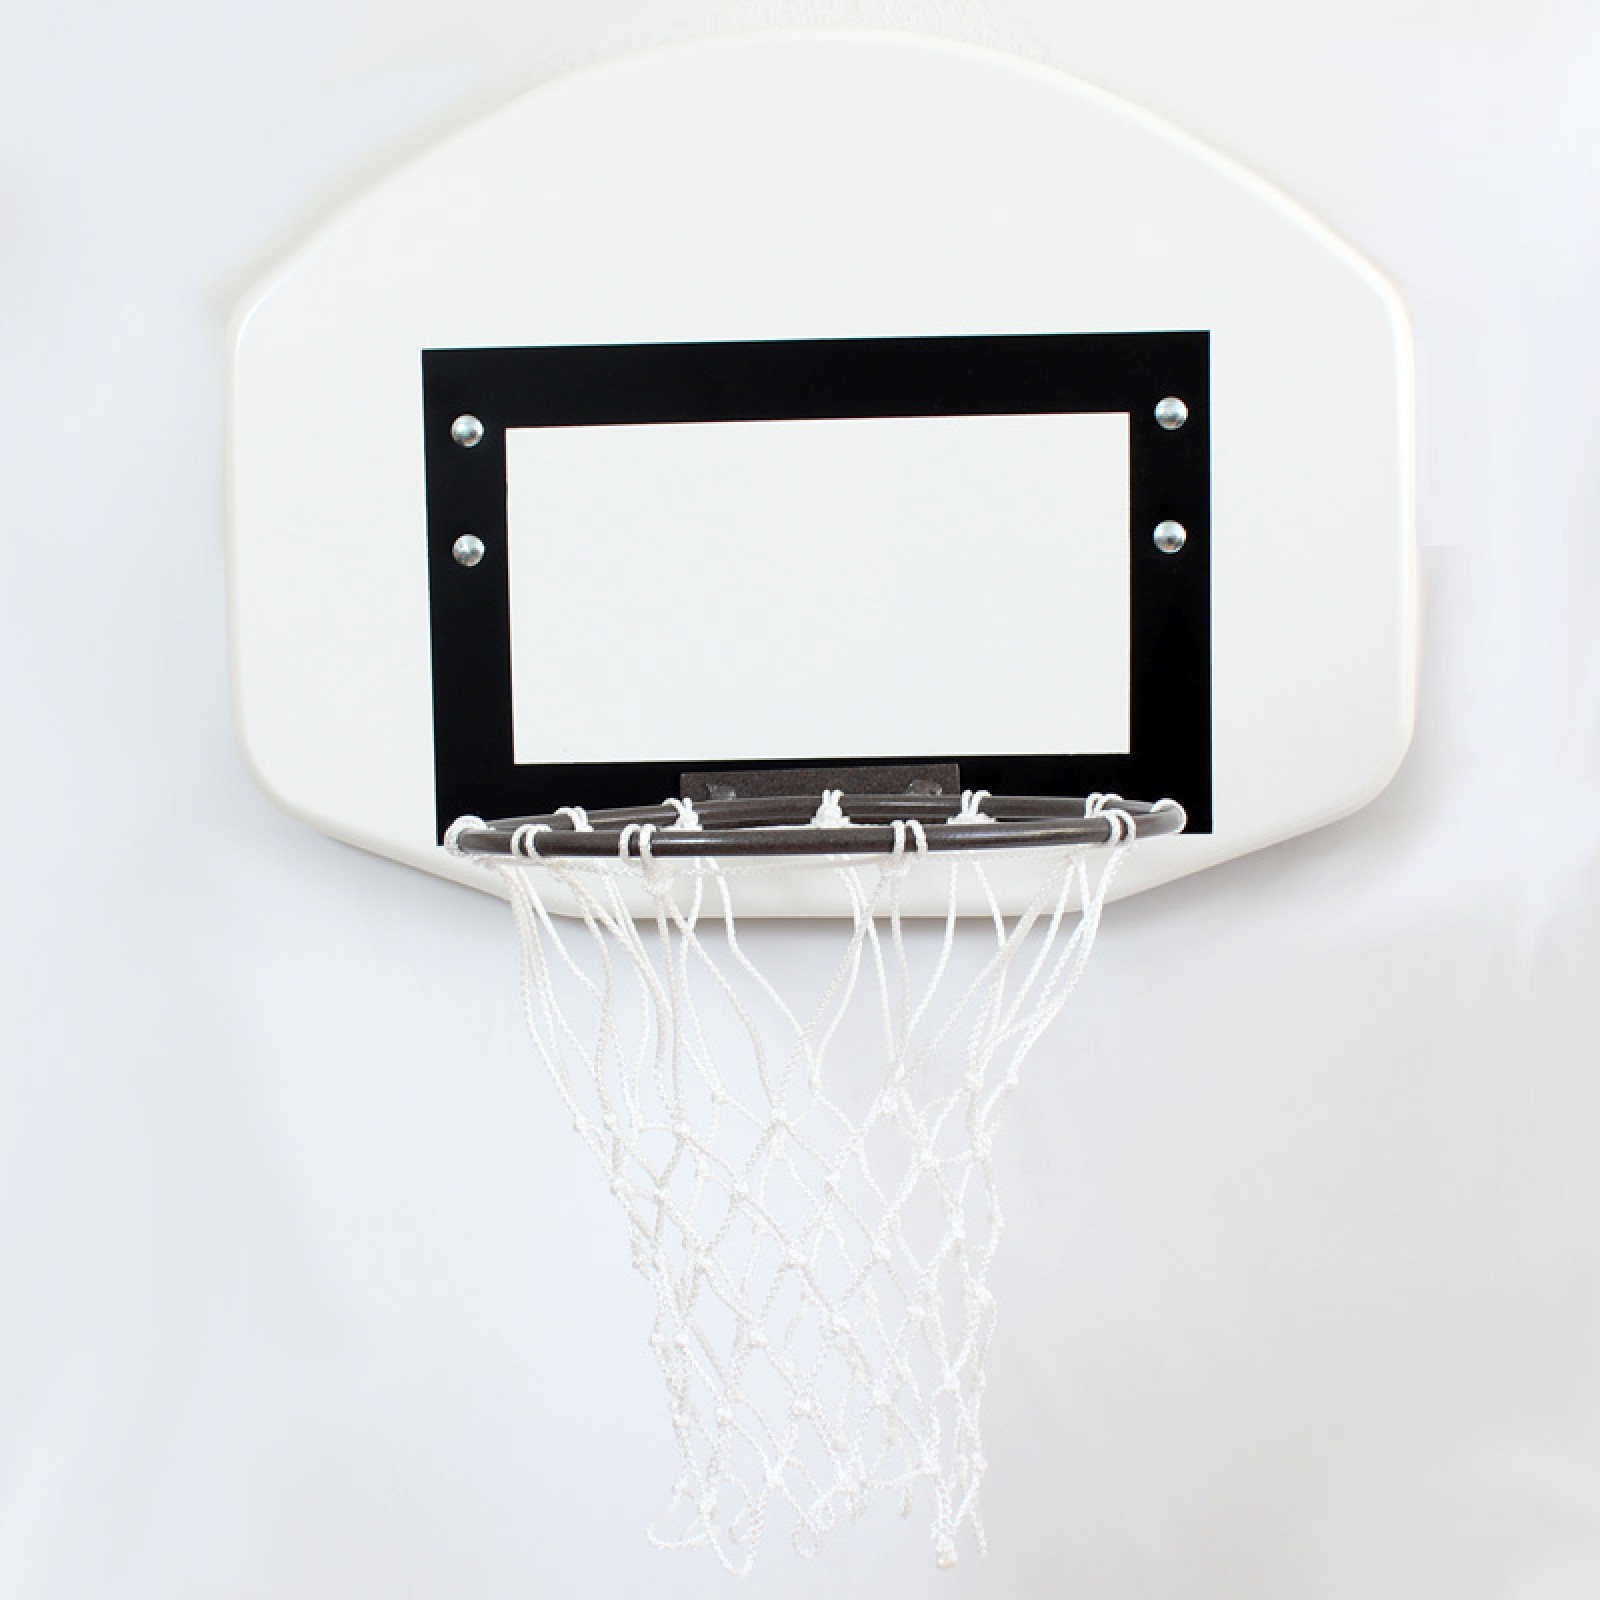 Kosárlabdapalánk, óvodai, 60 x 45 cm gyűrűvel, hálóval kompletten,bordásfalra S-SPORT